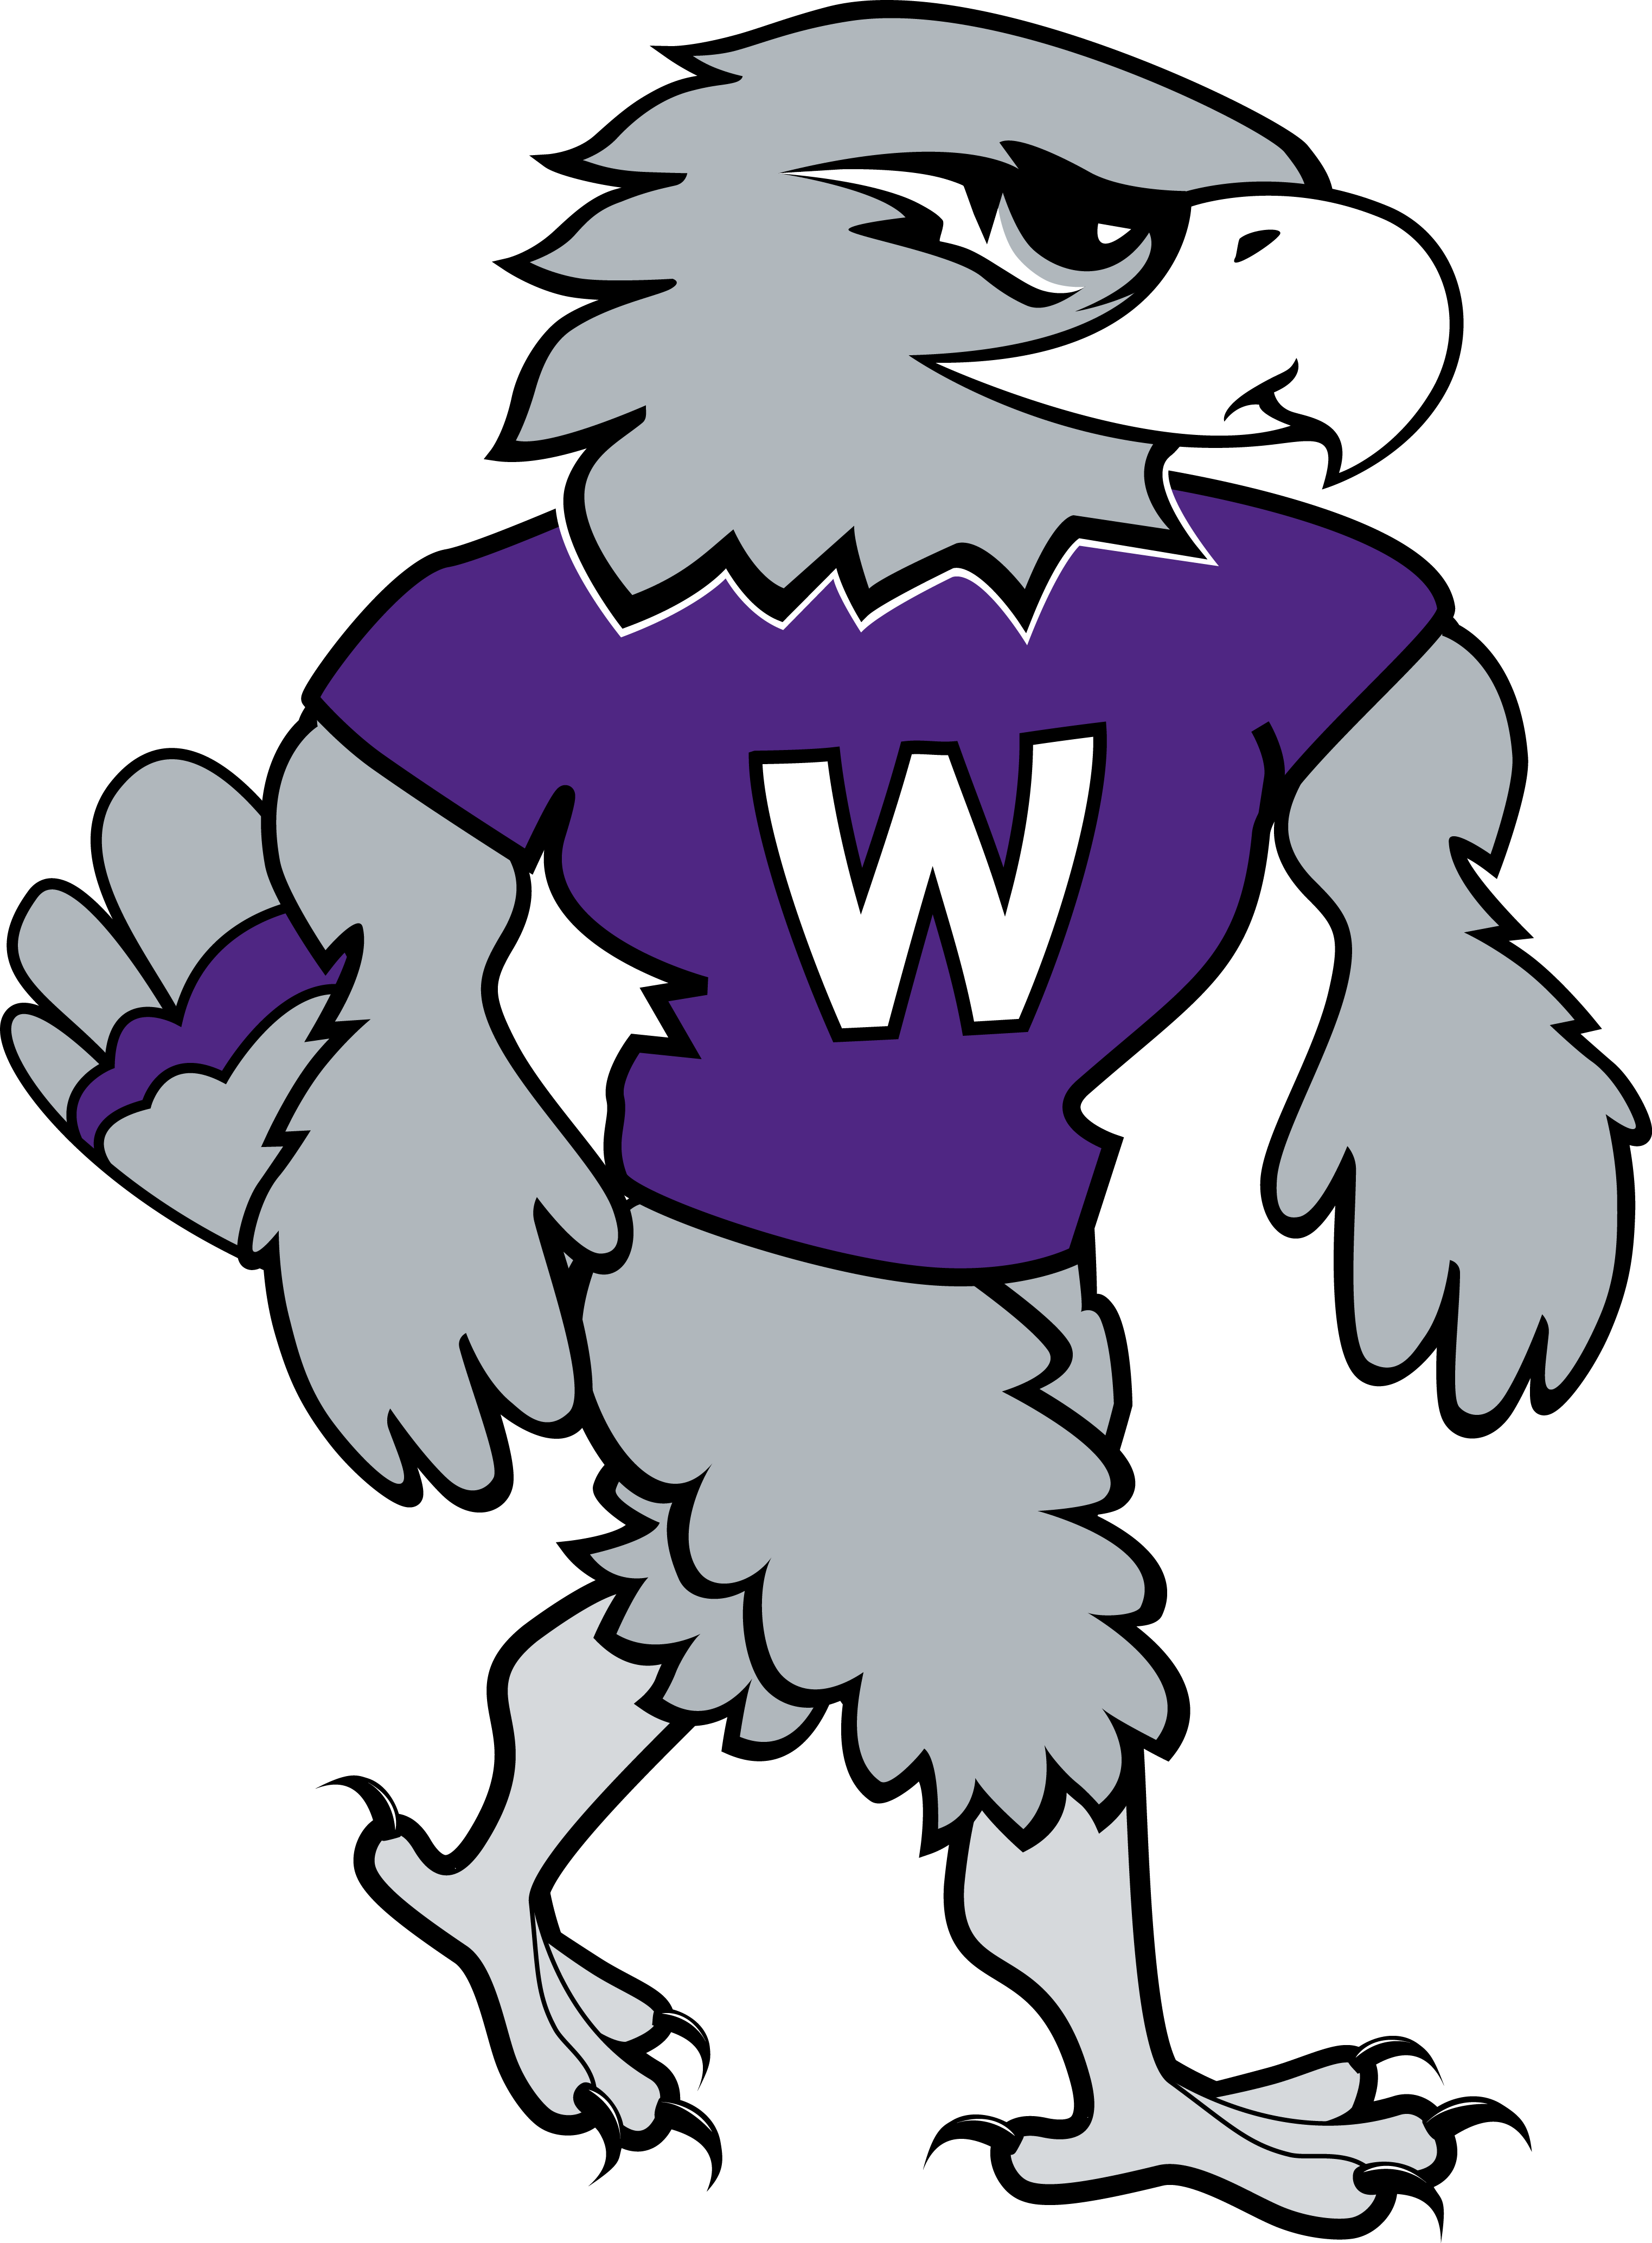 Willie Logos - University Of Whitewater Mascot (3046x4136)